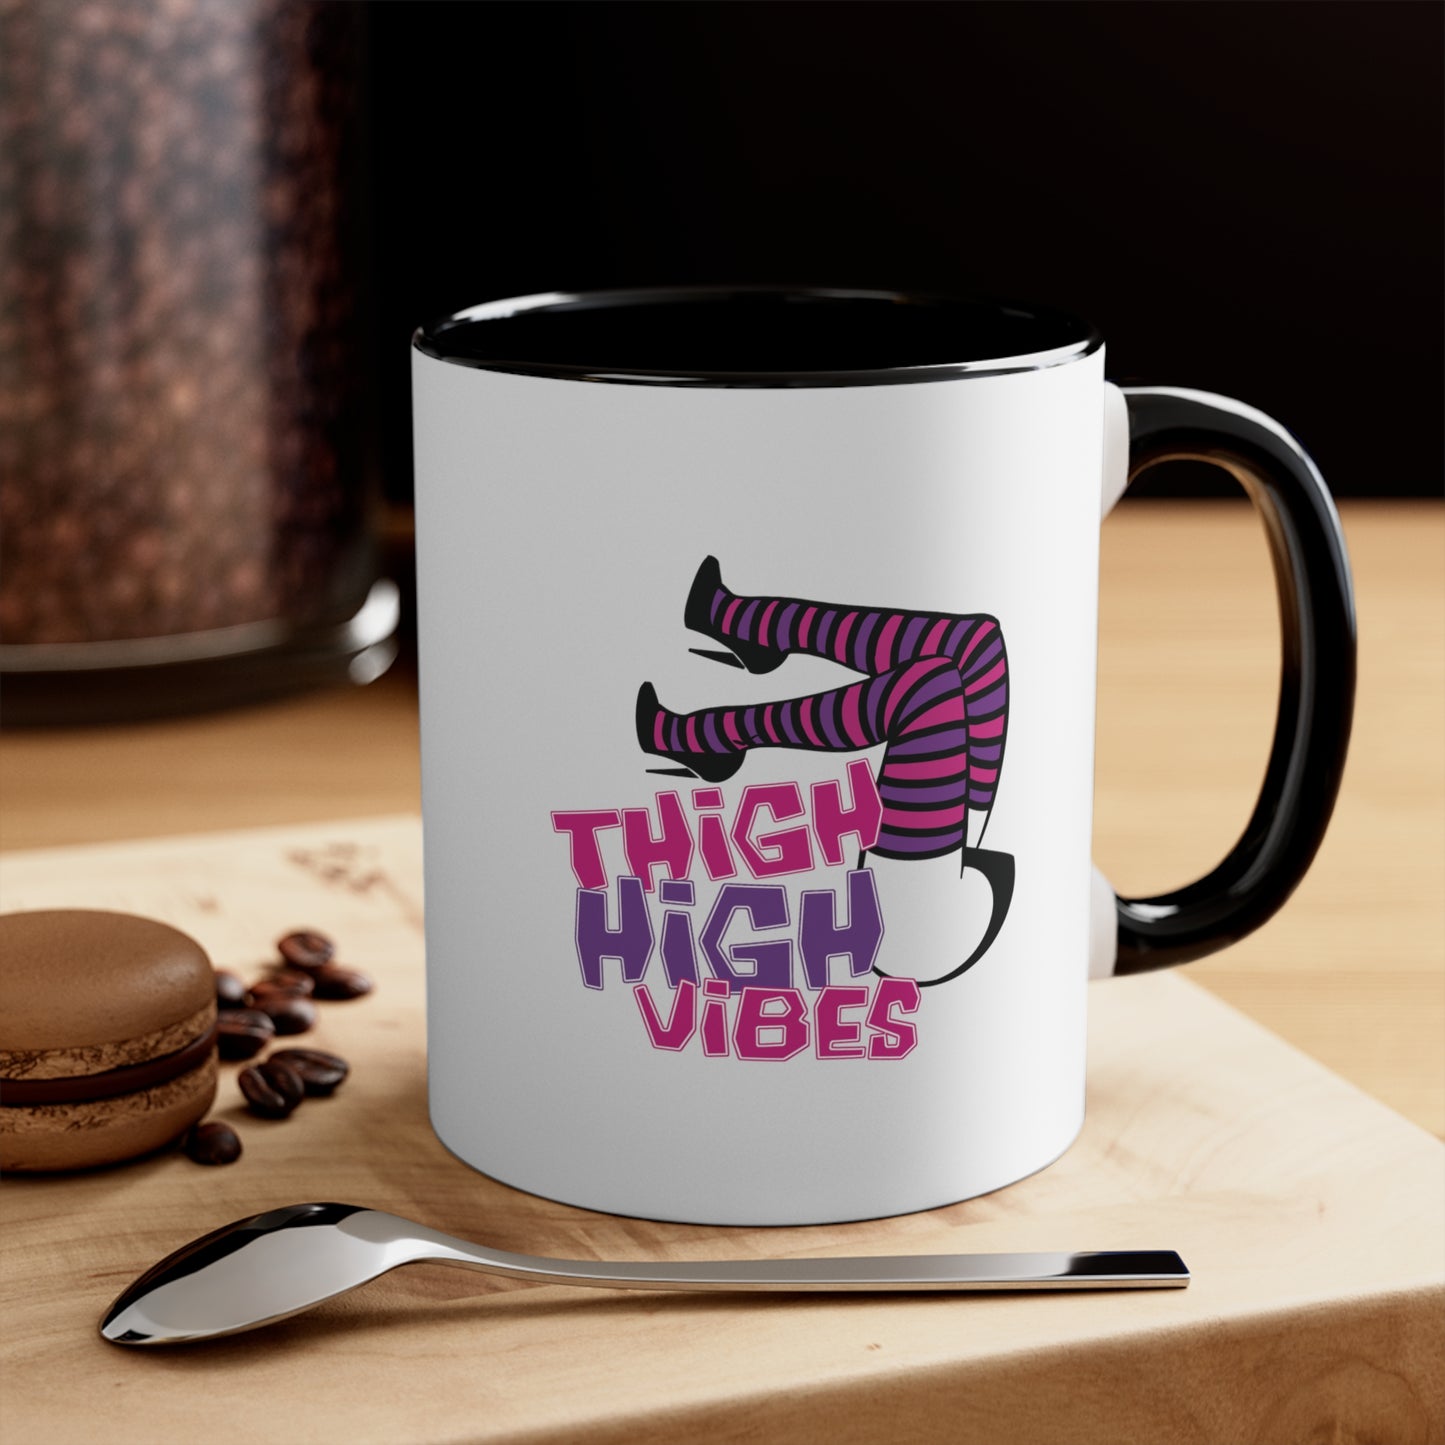 Thigh High Vibes Mug